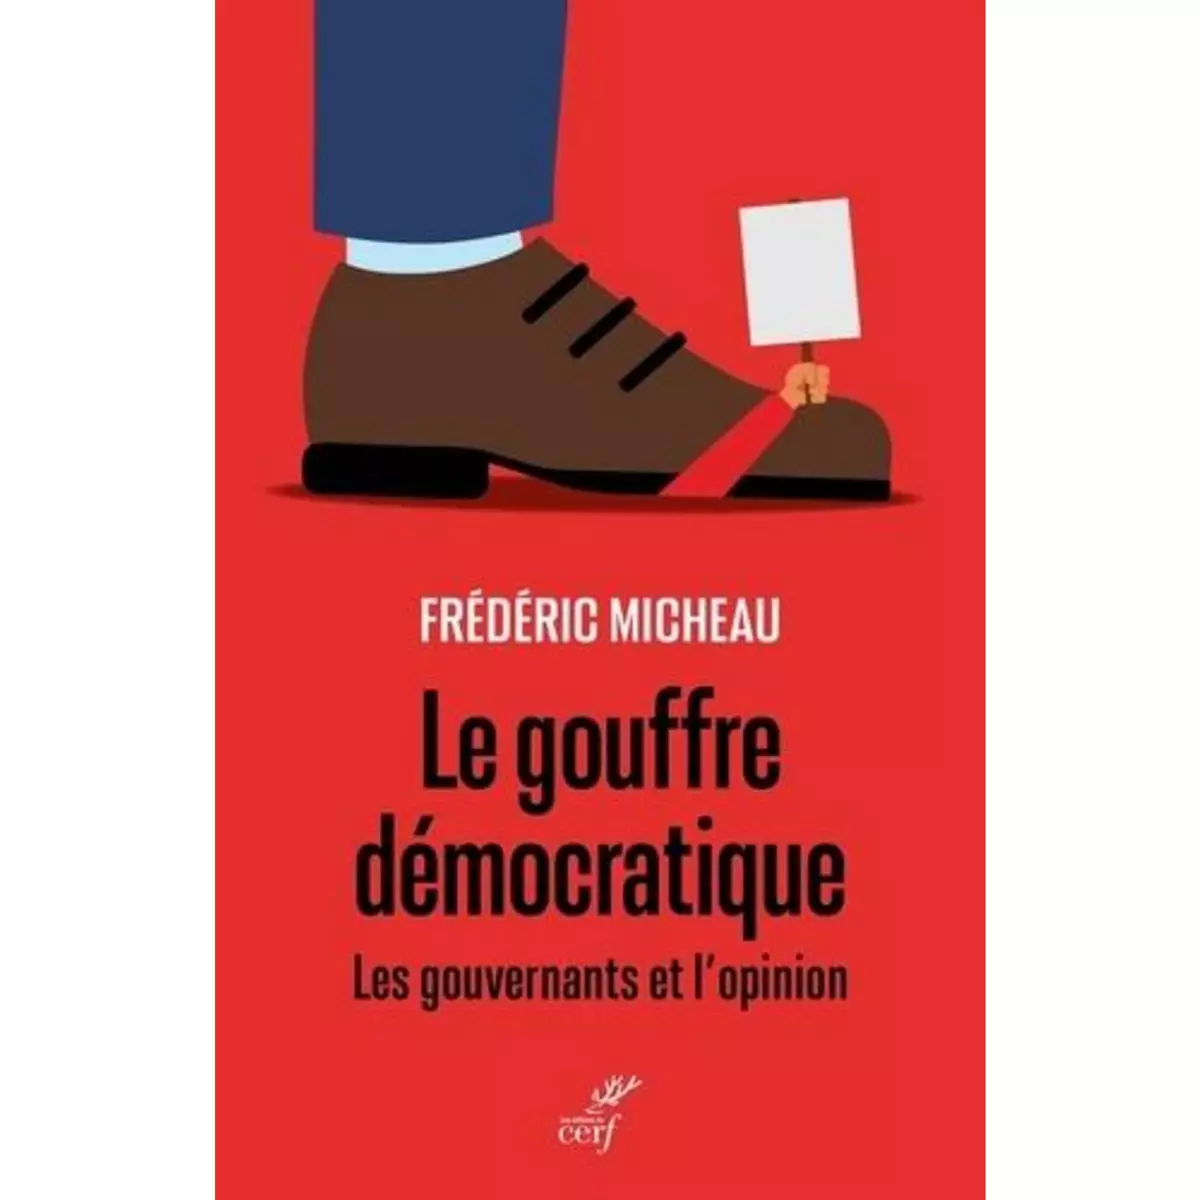  LE GOUFFRE DEMOCRATIQUE. LES GOUVERNANTS ET L'OPINION, Micheau Frédéric